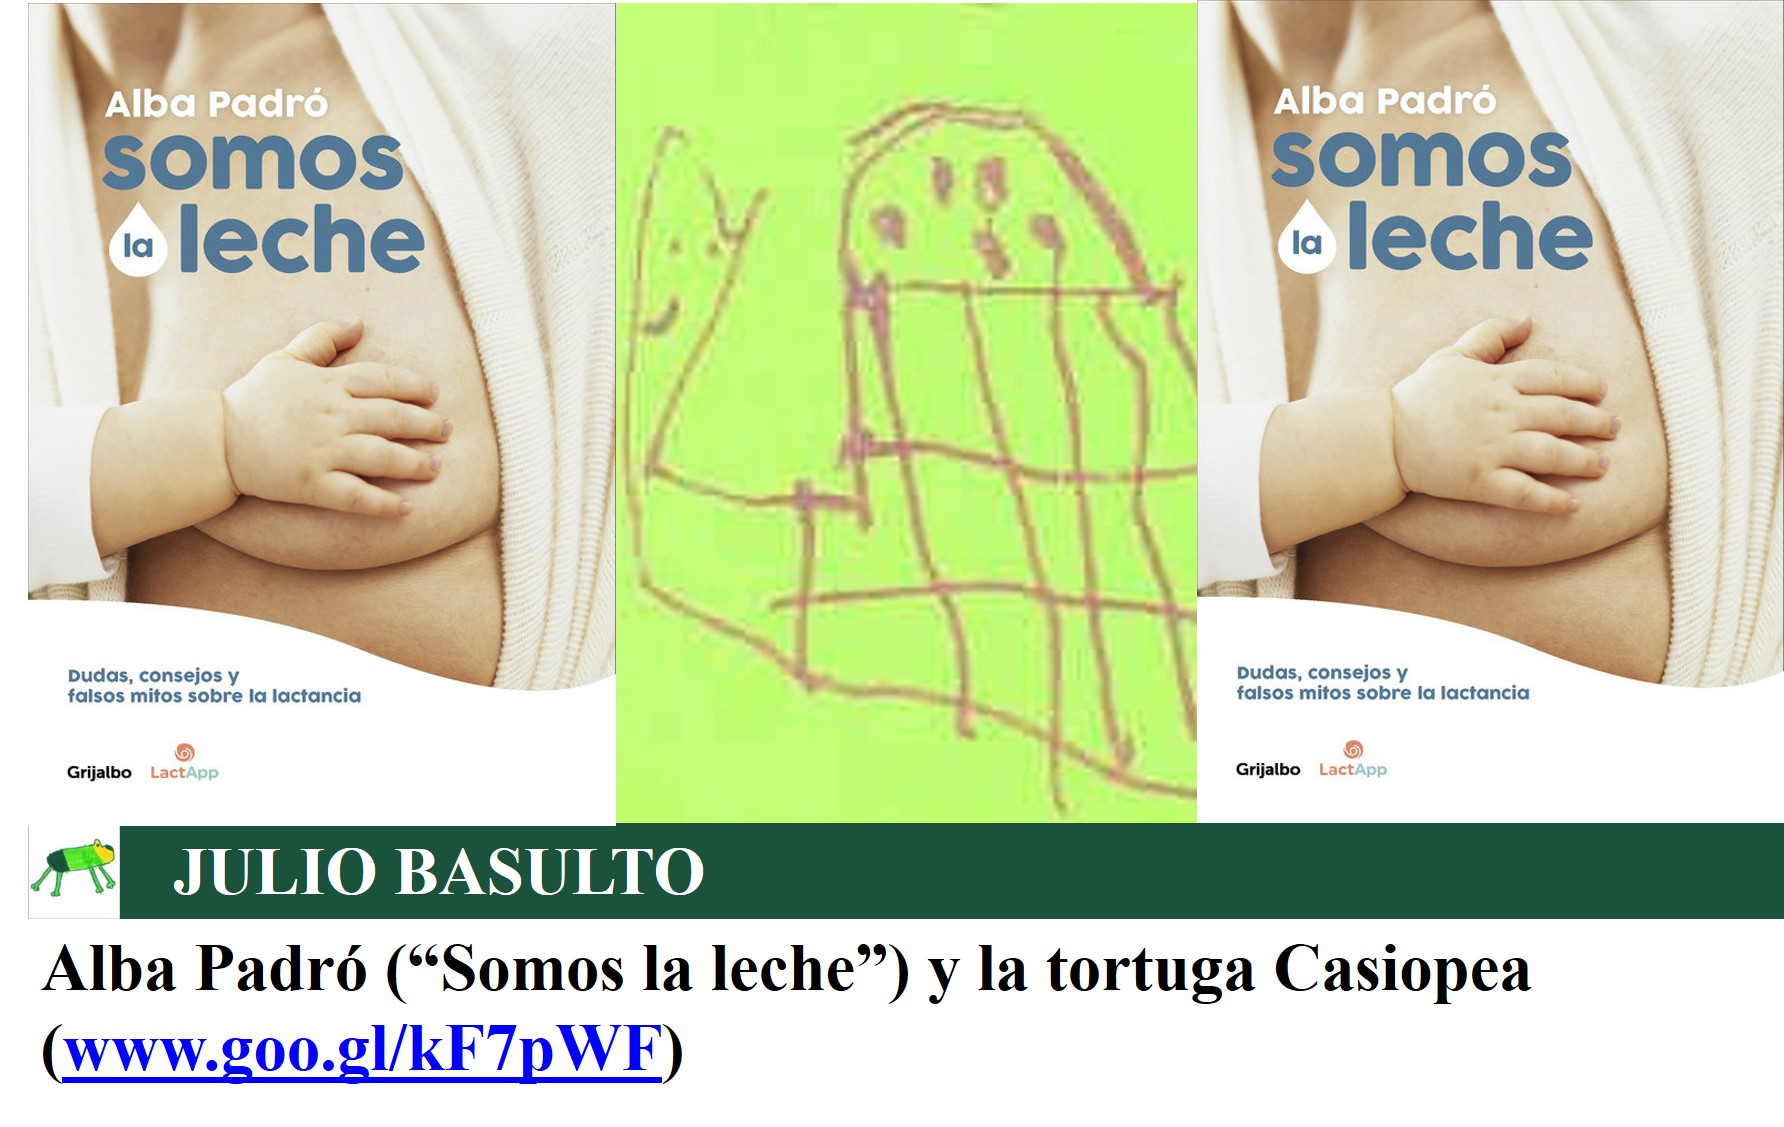 Alba Padró (Somos la leche) y la tortuga Casiopea - Julio Basulto